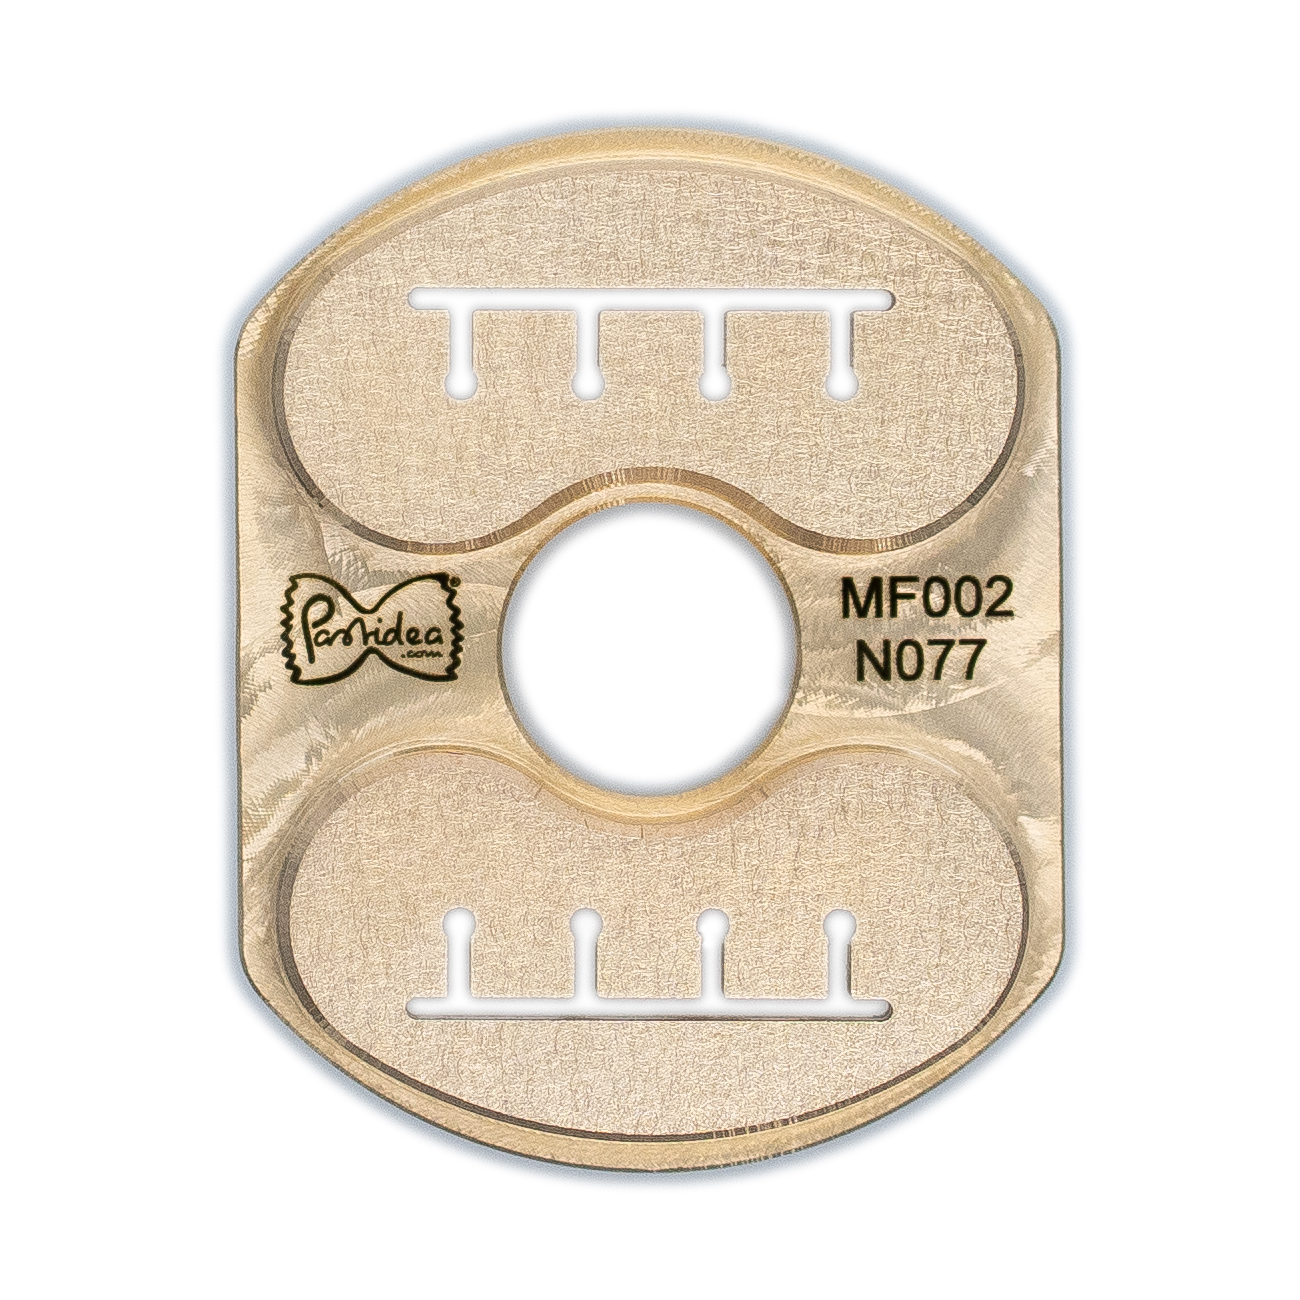 pasta einsatz in bronze radiatori a4 23mm für philips avance / 7000 series (einsatzhalter vertikal erforderlich)